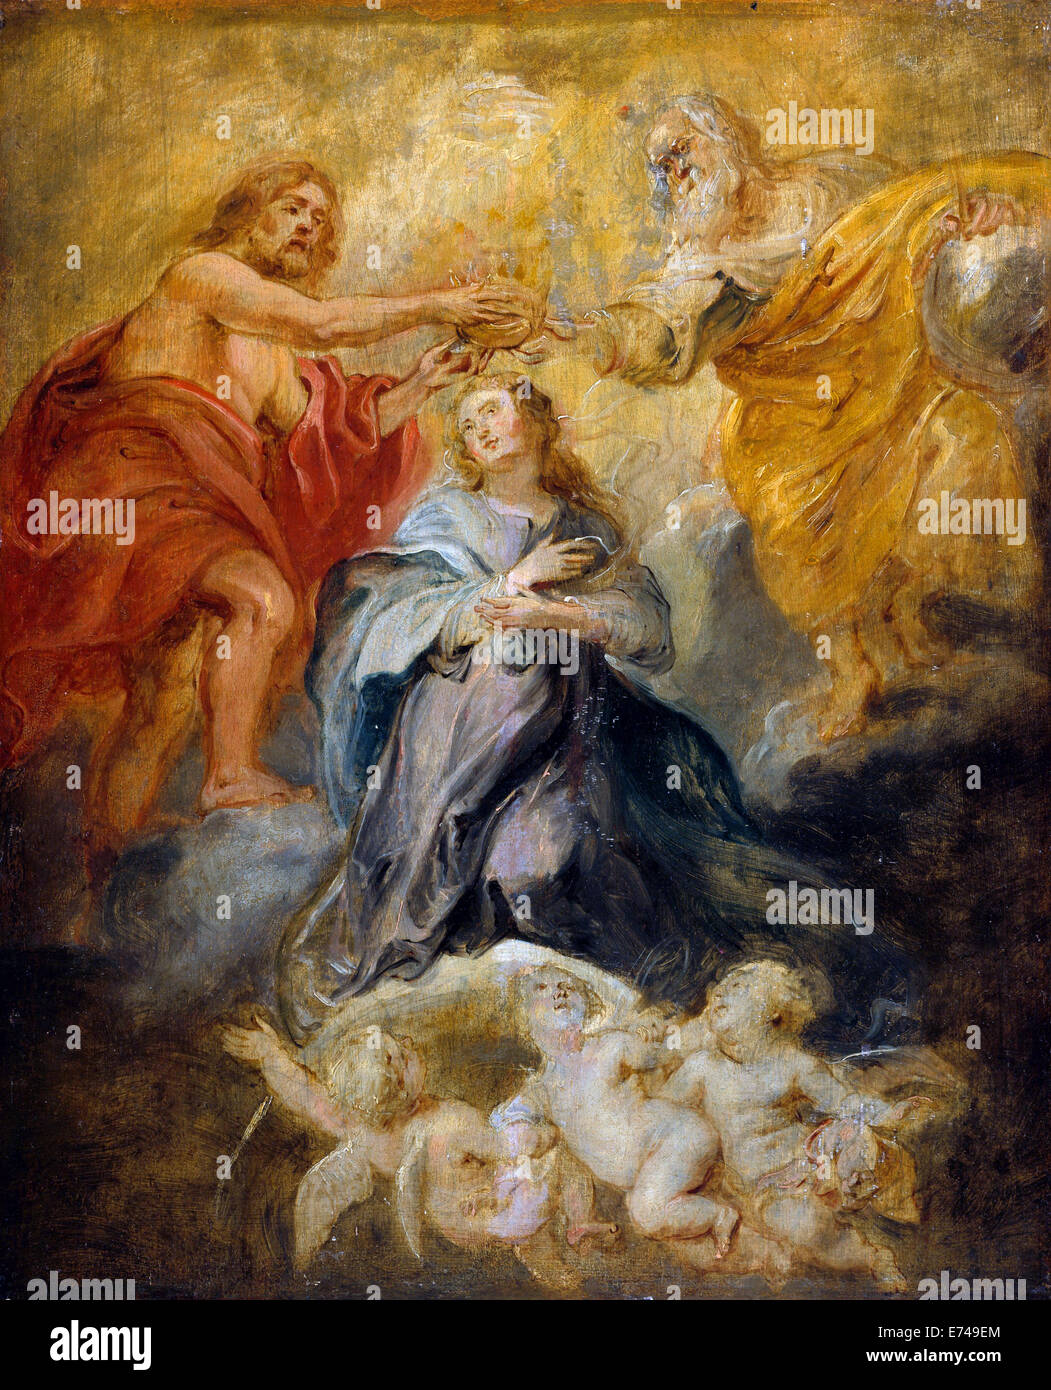 Le couronnement de la Vierge - de Peter Paul Rubens, 1633 Banque D'Images